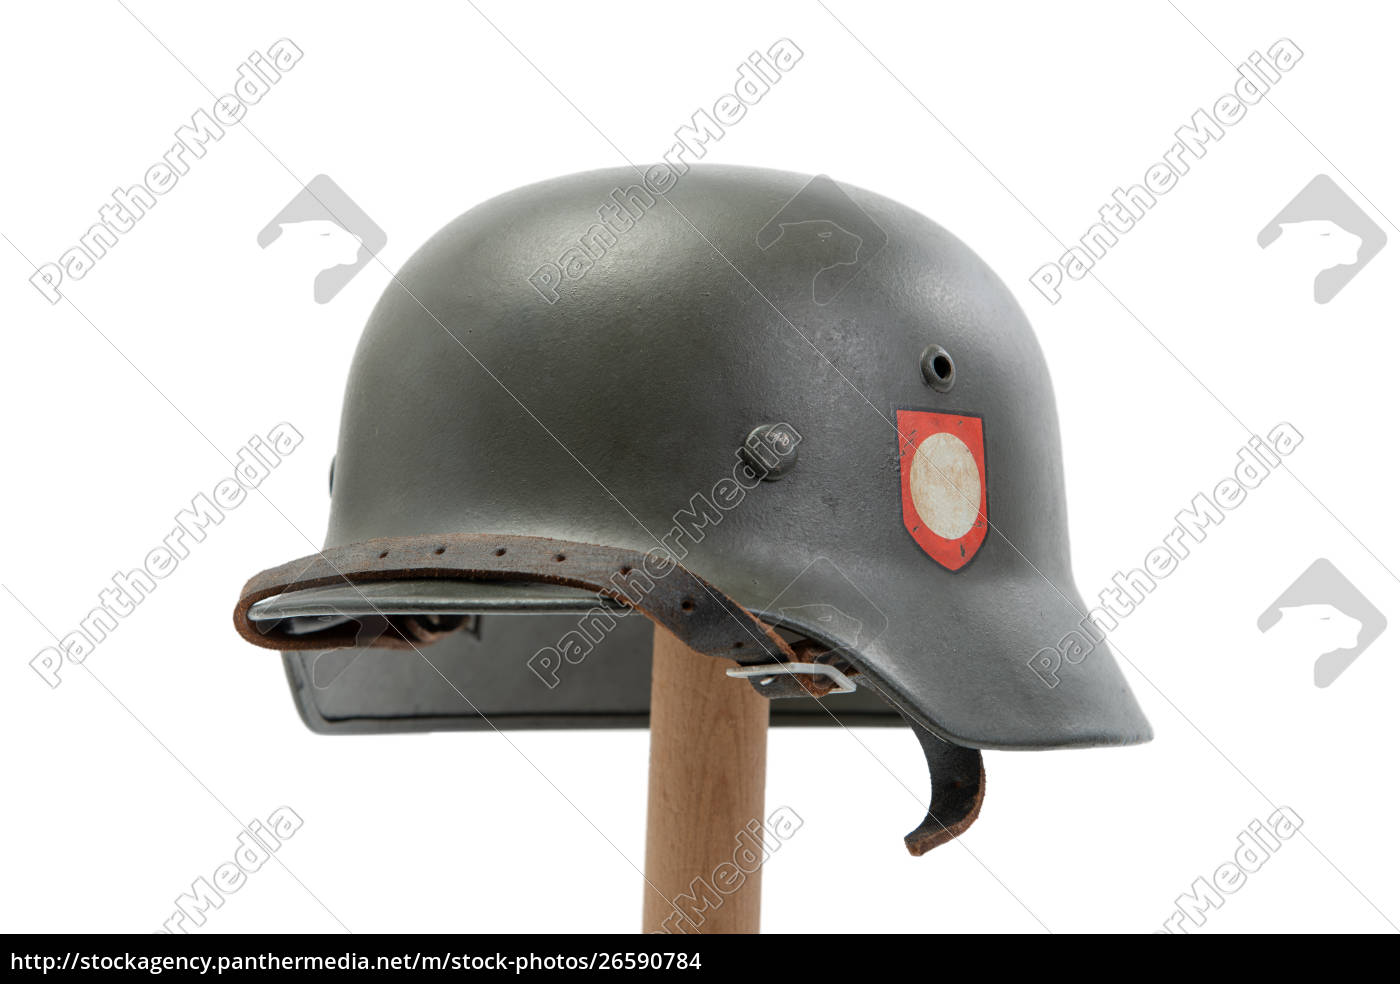 Elmetto militare tedesco della seconda guerra mondiale - Stockphoto  #26590784